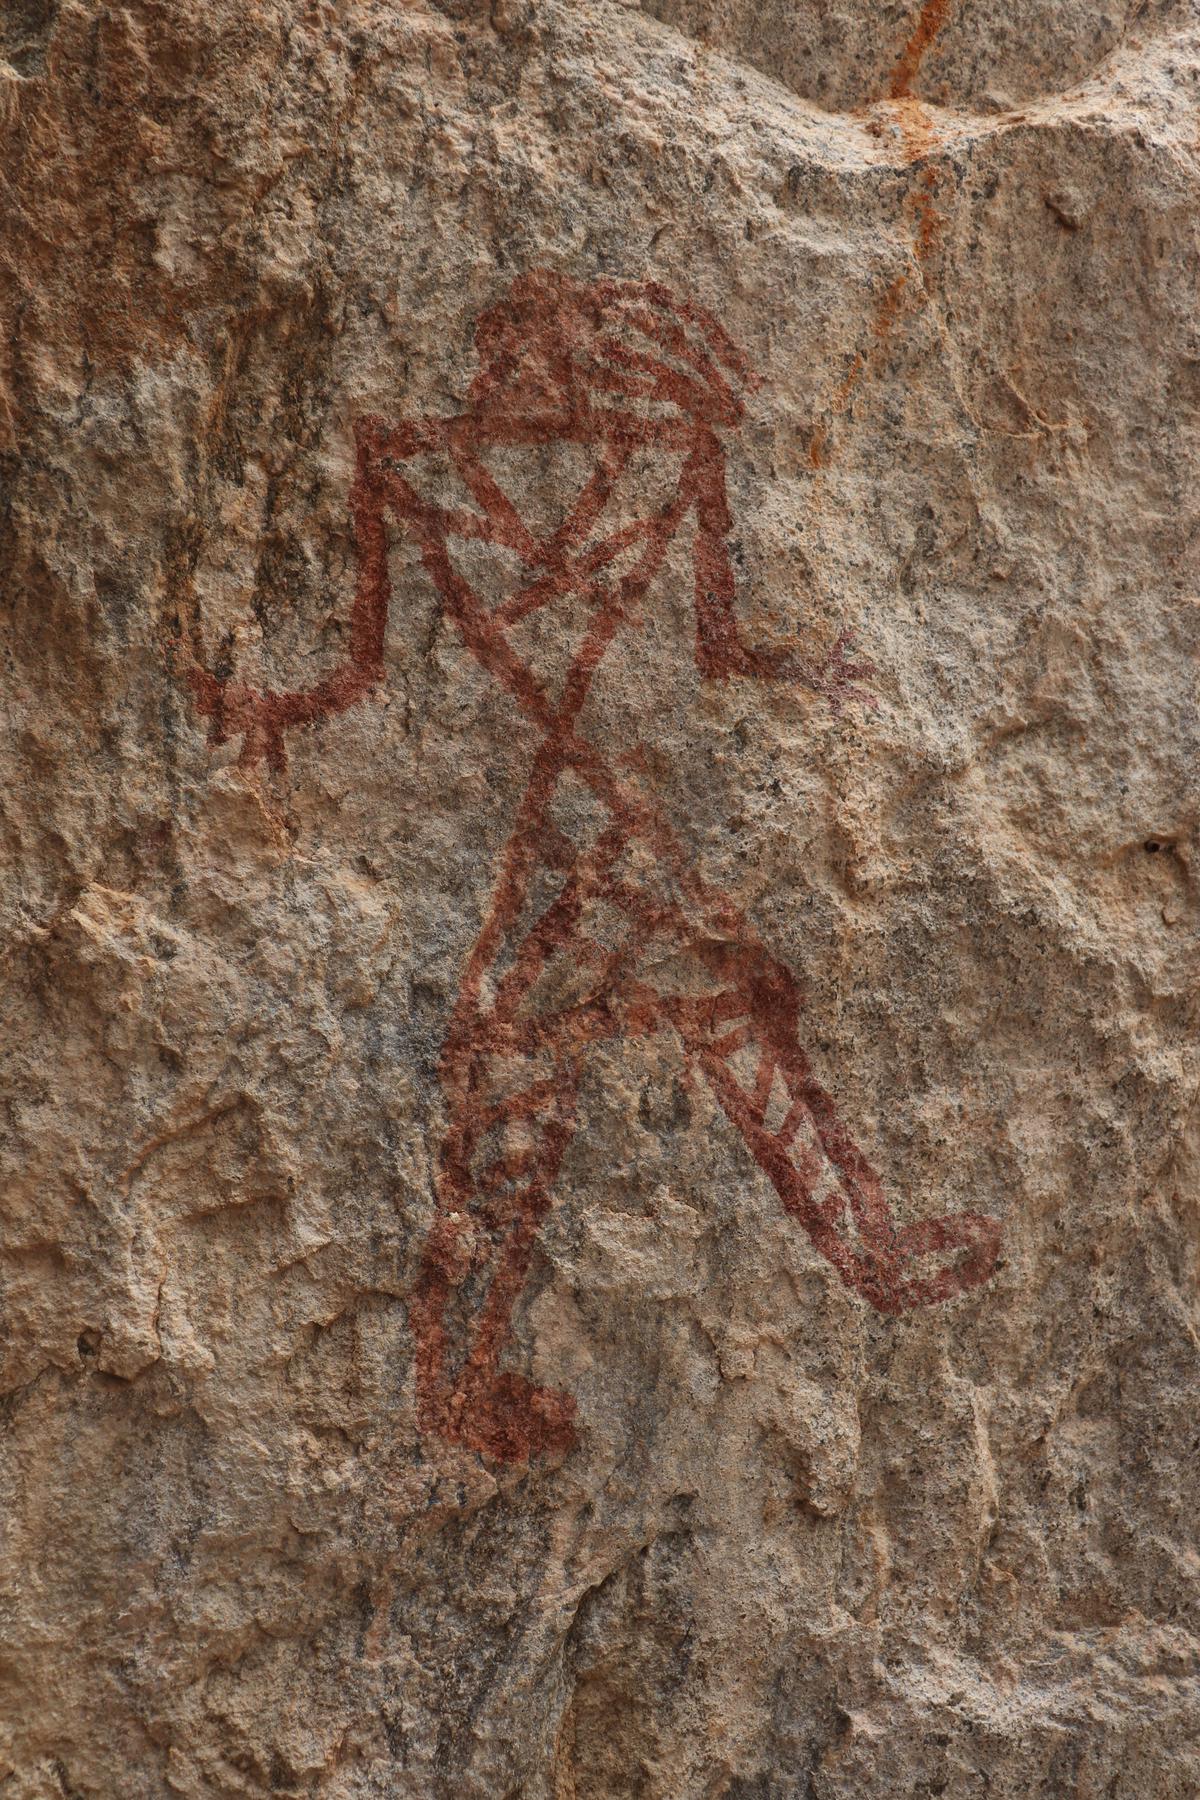 Fascinating rock art: bird-faced man in Azhagar Hills, done in red ochre